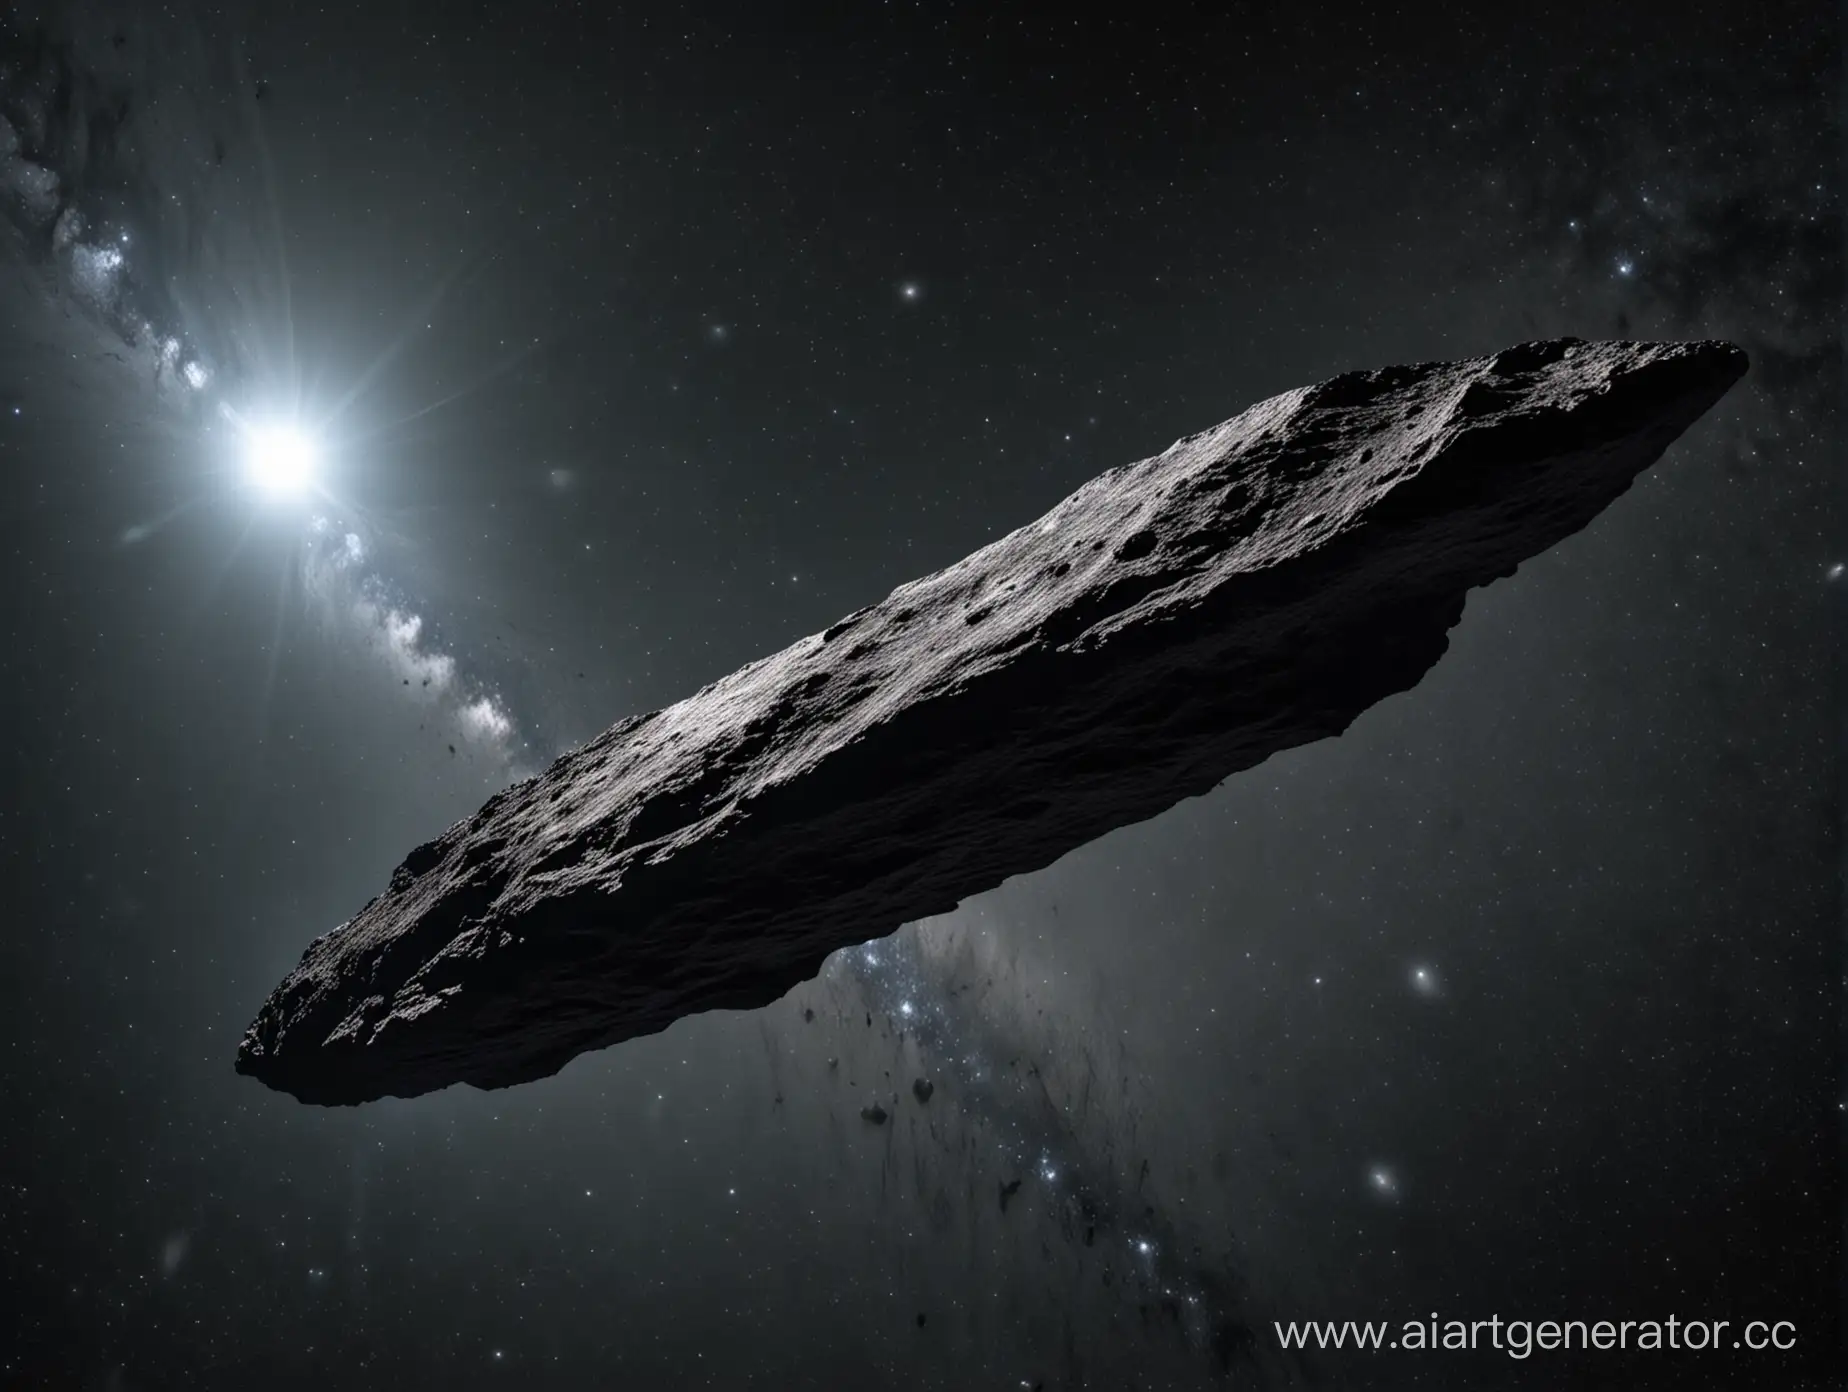 астероид под названием оумуамуа ввиде космического корабля